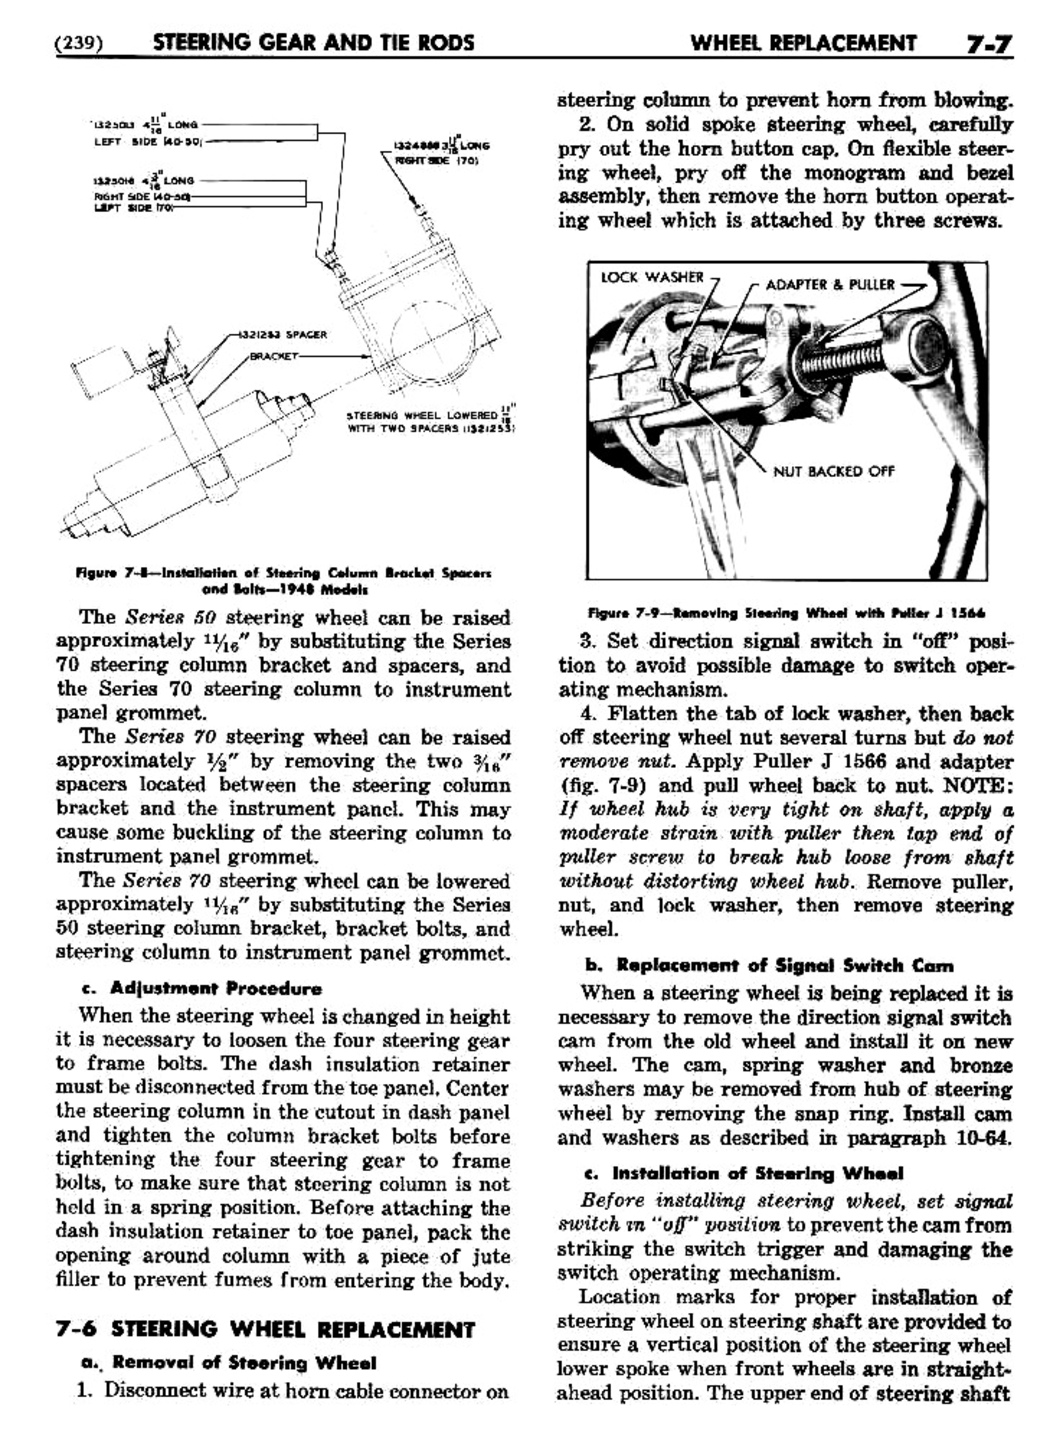 n_08 1948 Buick Shop Manual - Steering-007-007.jpg